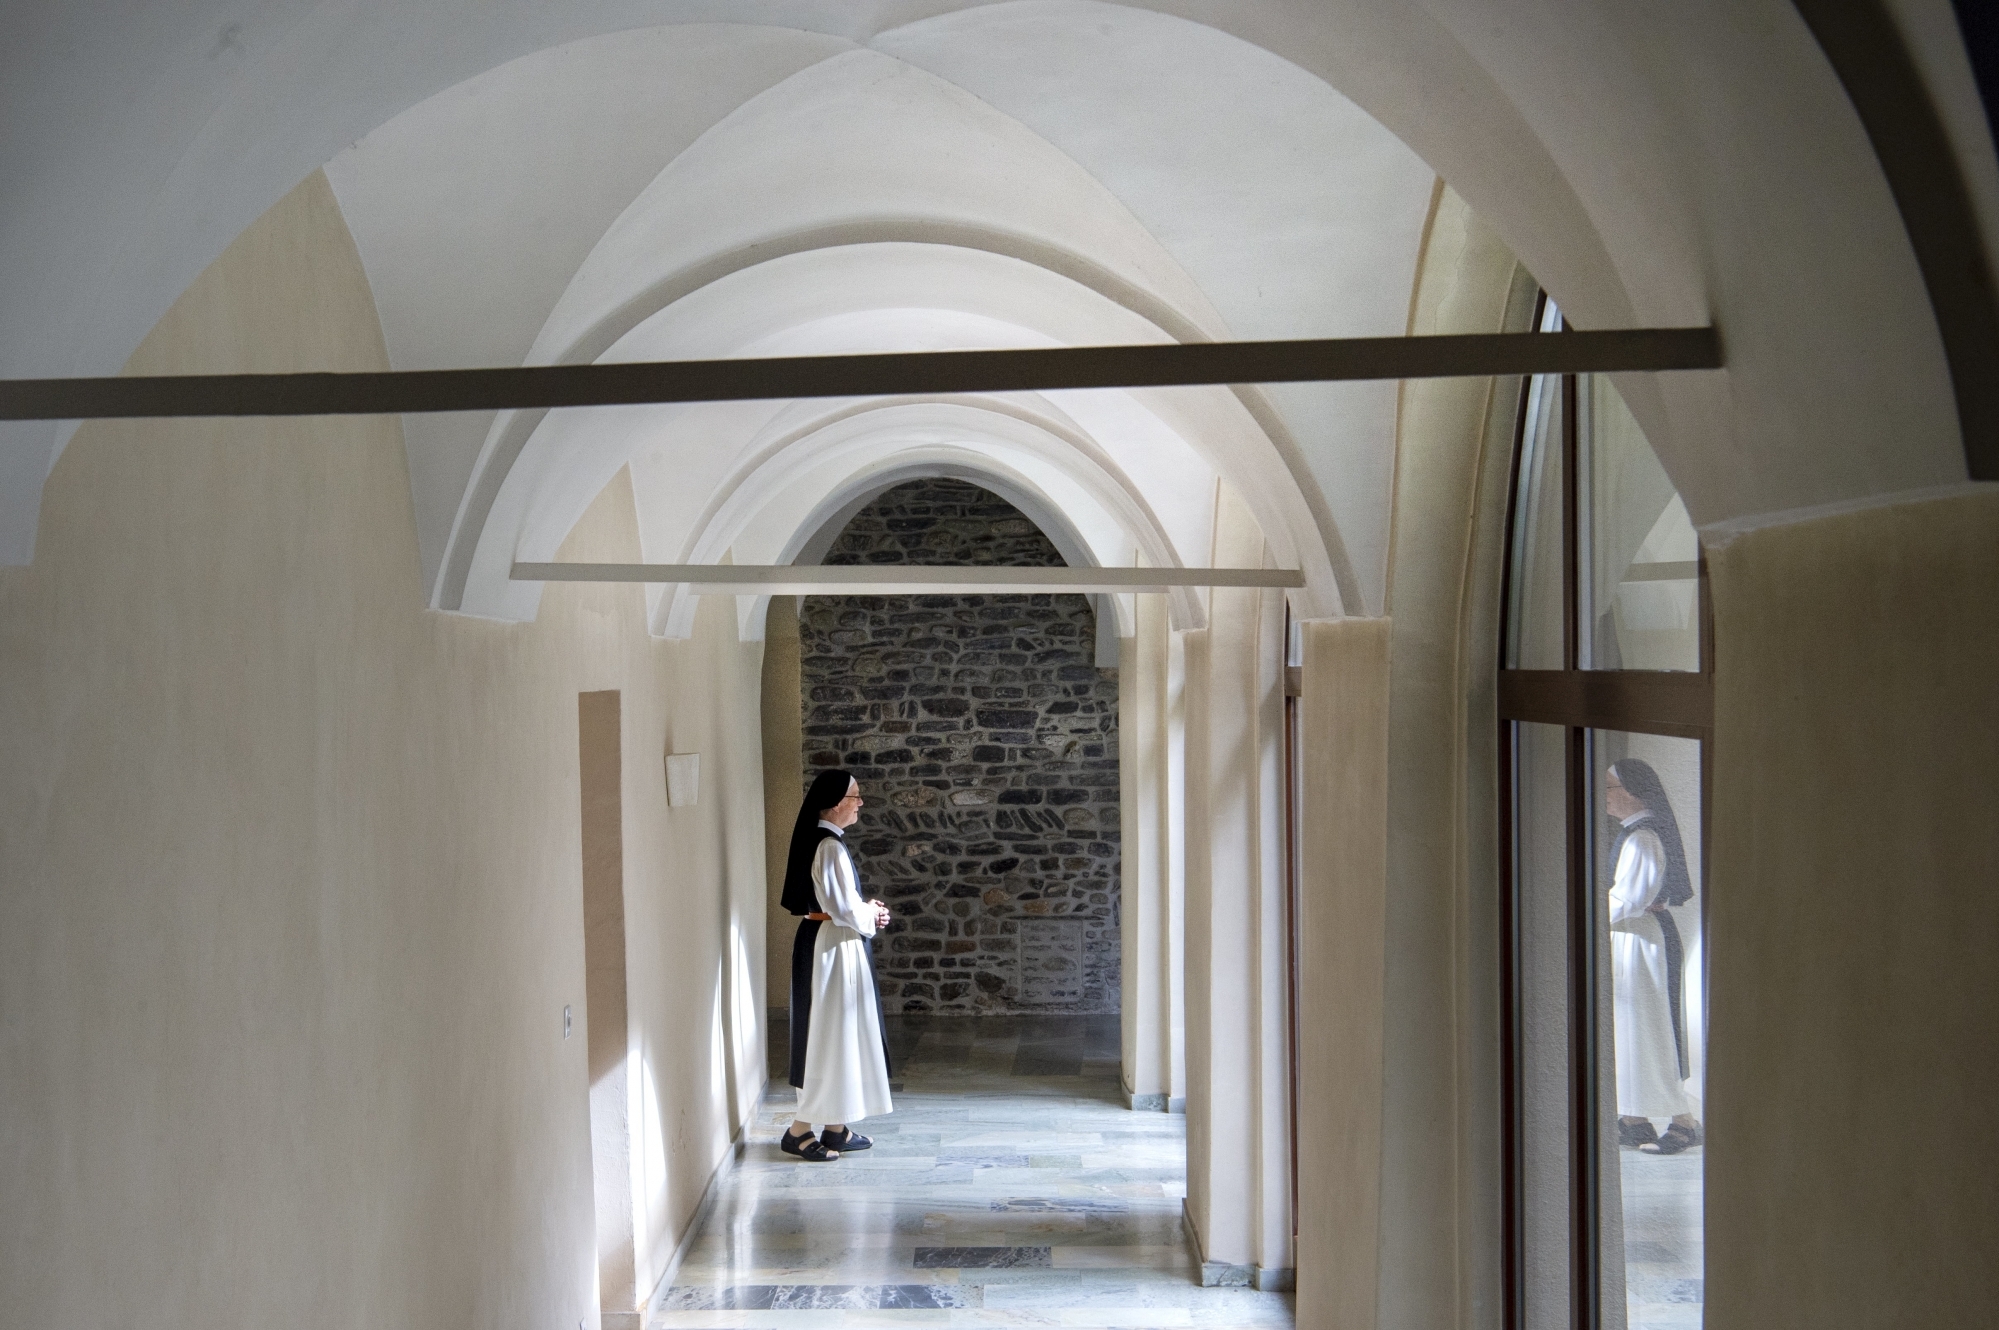 Les sœurs du couvent de Géronde nous ont ouvert leurs portes pour parler confinement à l'heure où le monde se déconfine.